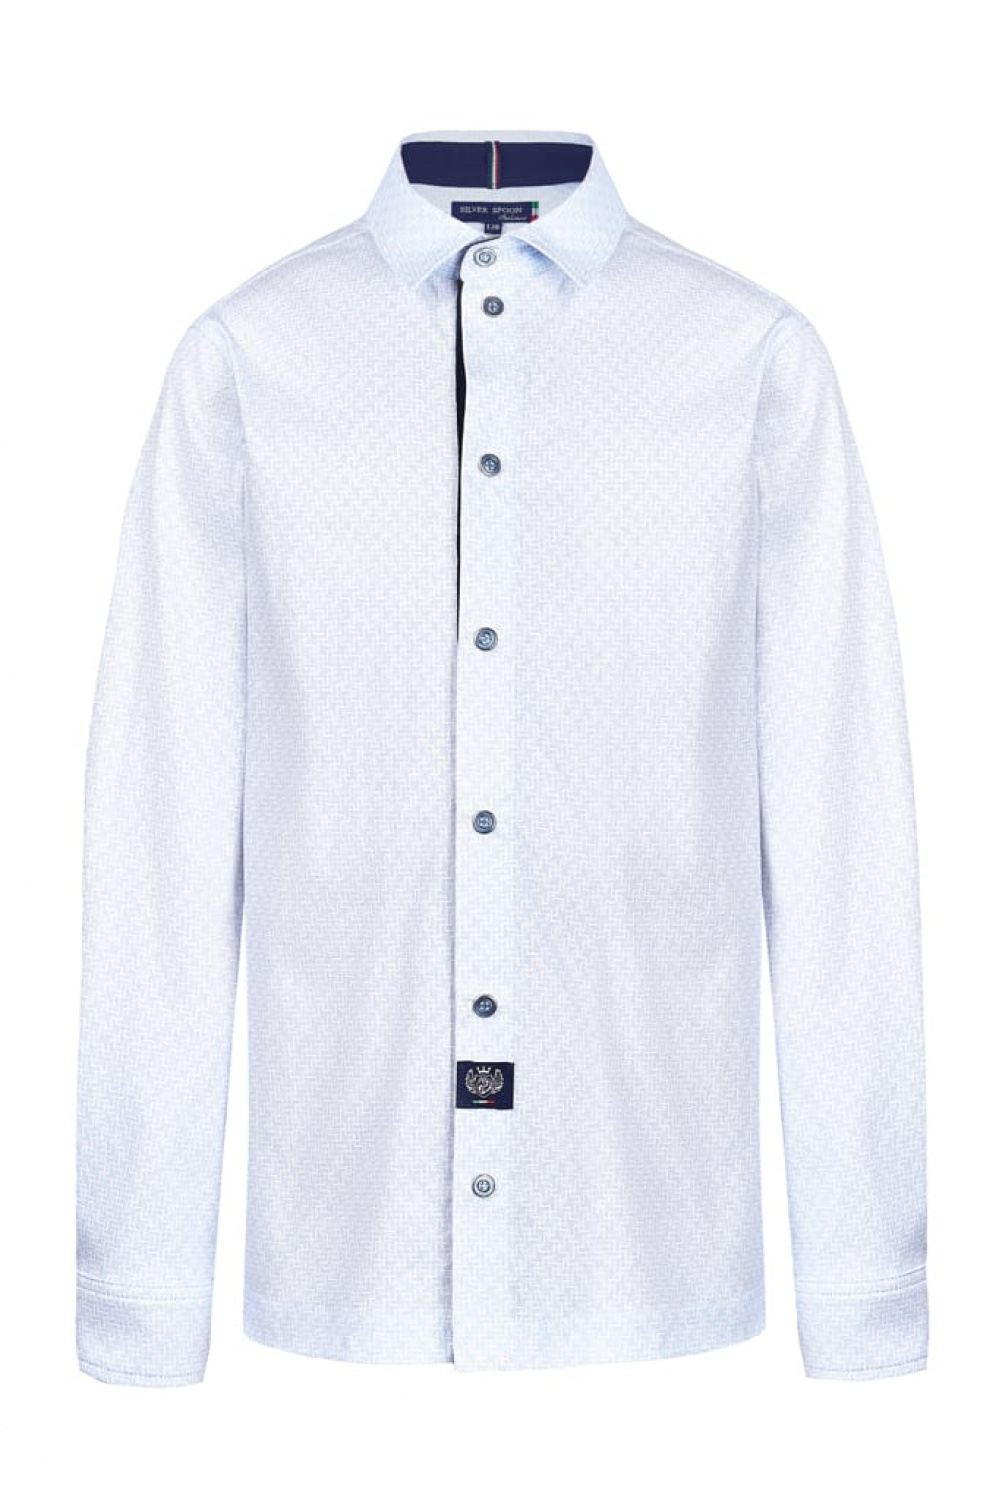 Трикотажная сорочка на кнопках из хлопка силуэта Comfort (SSFSB-028-14002-213) Silver spoon